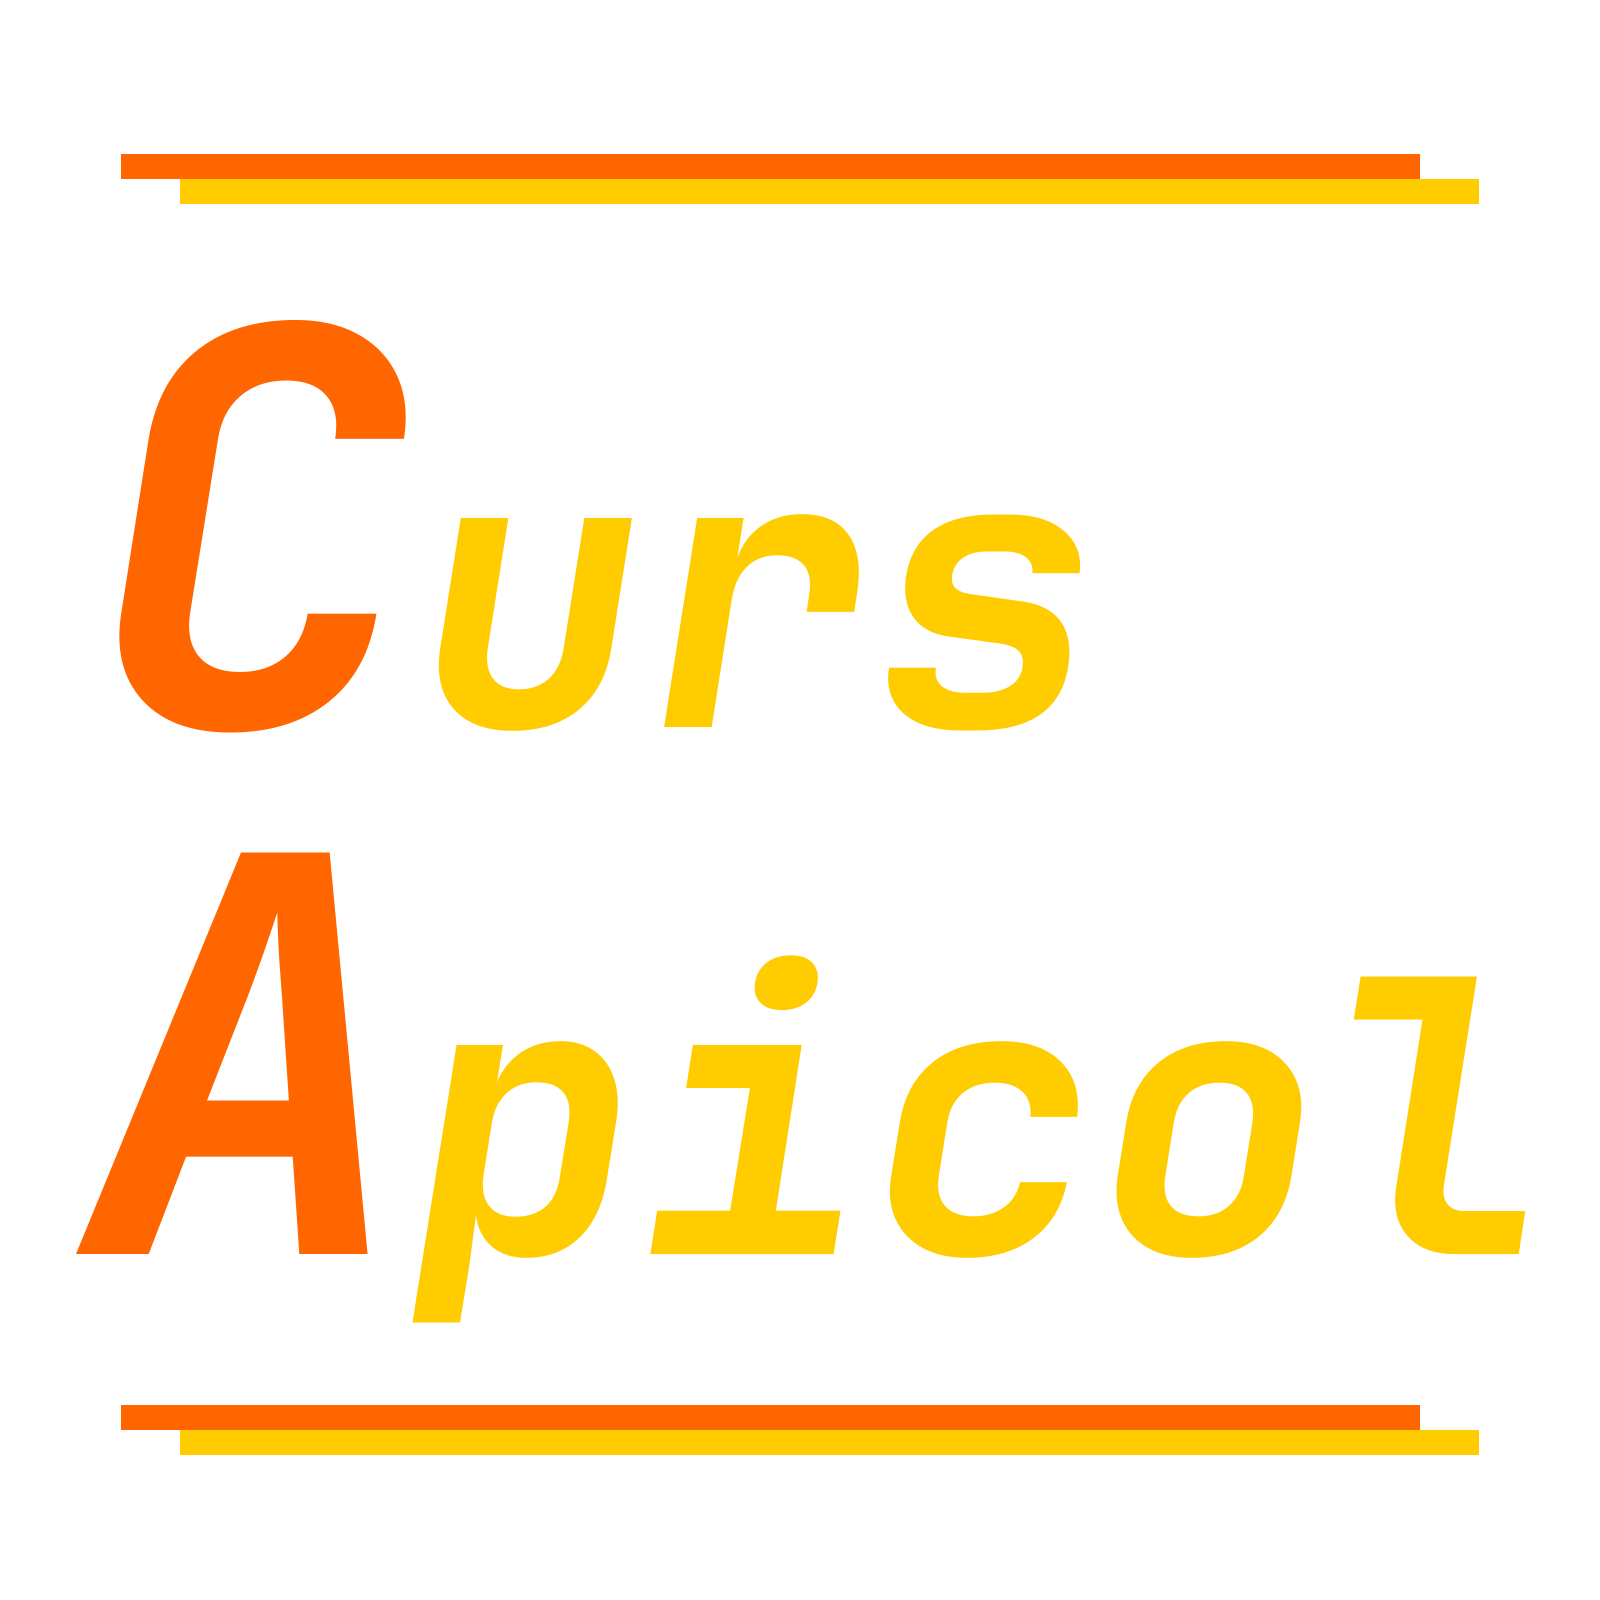 Curs Apicol